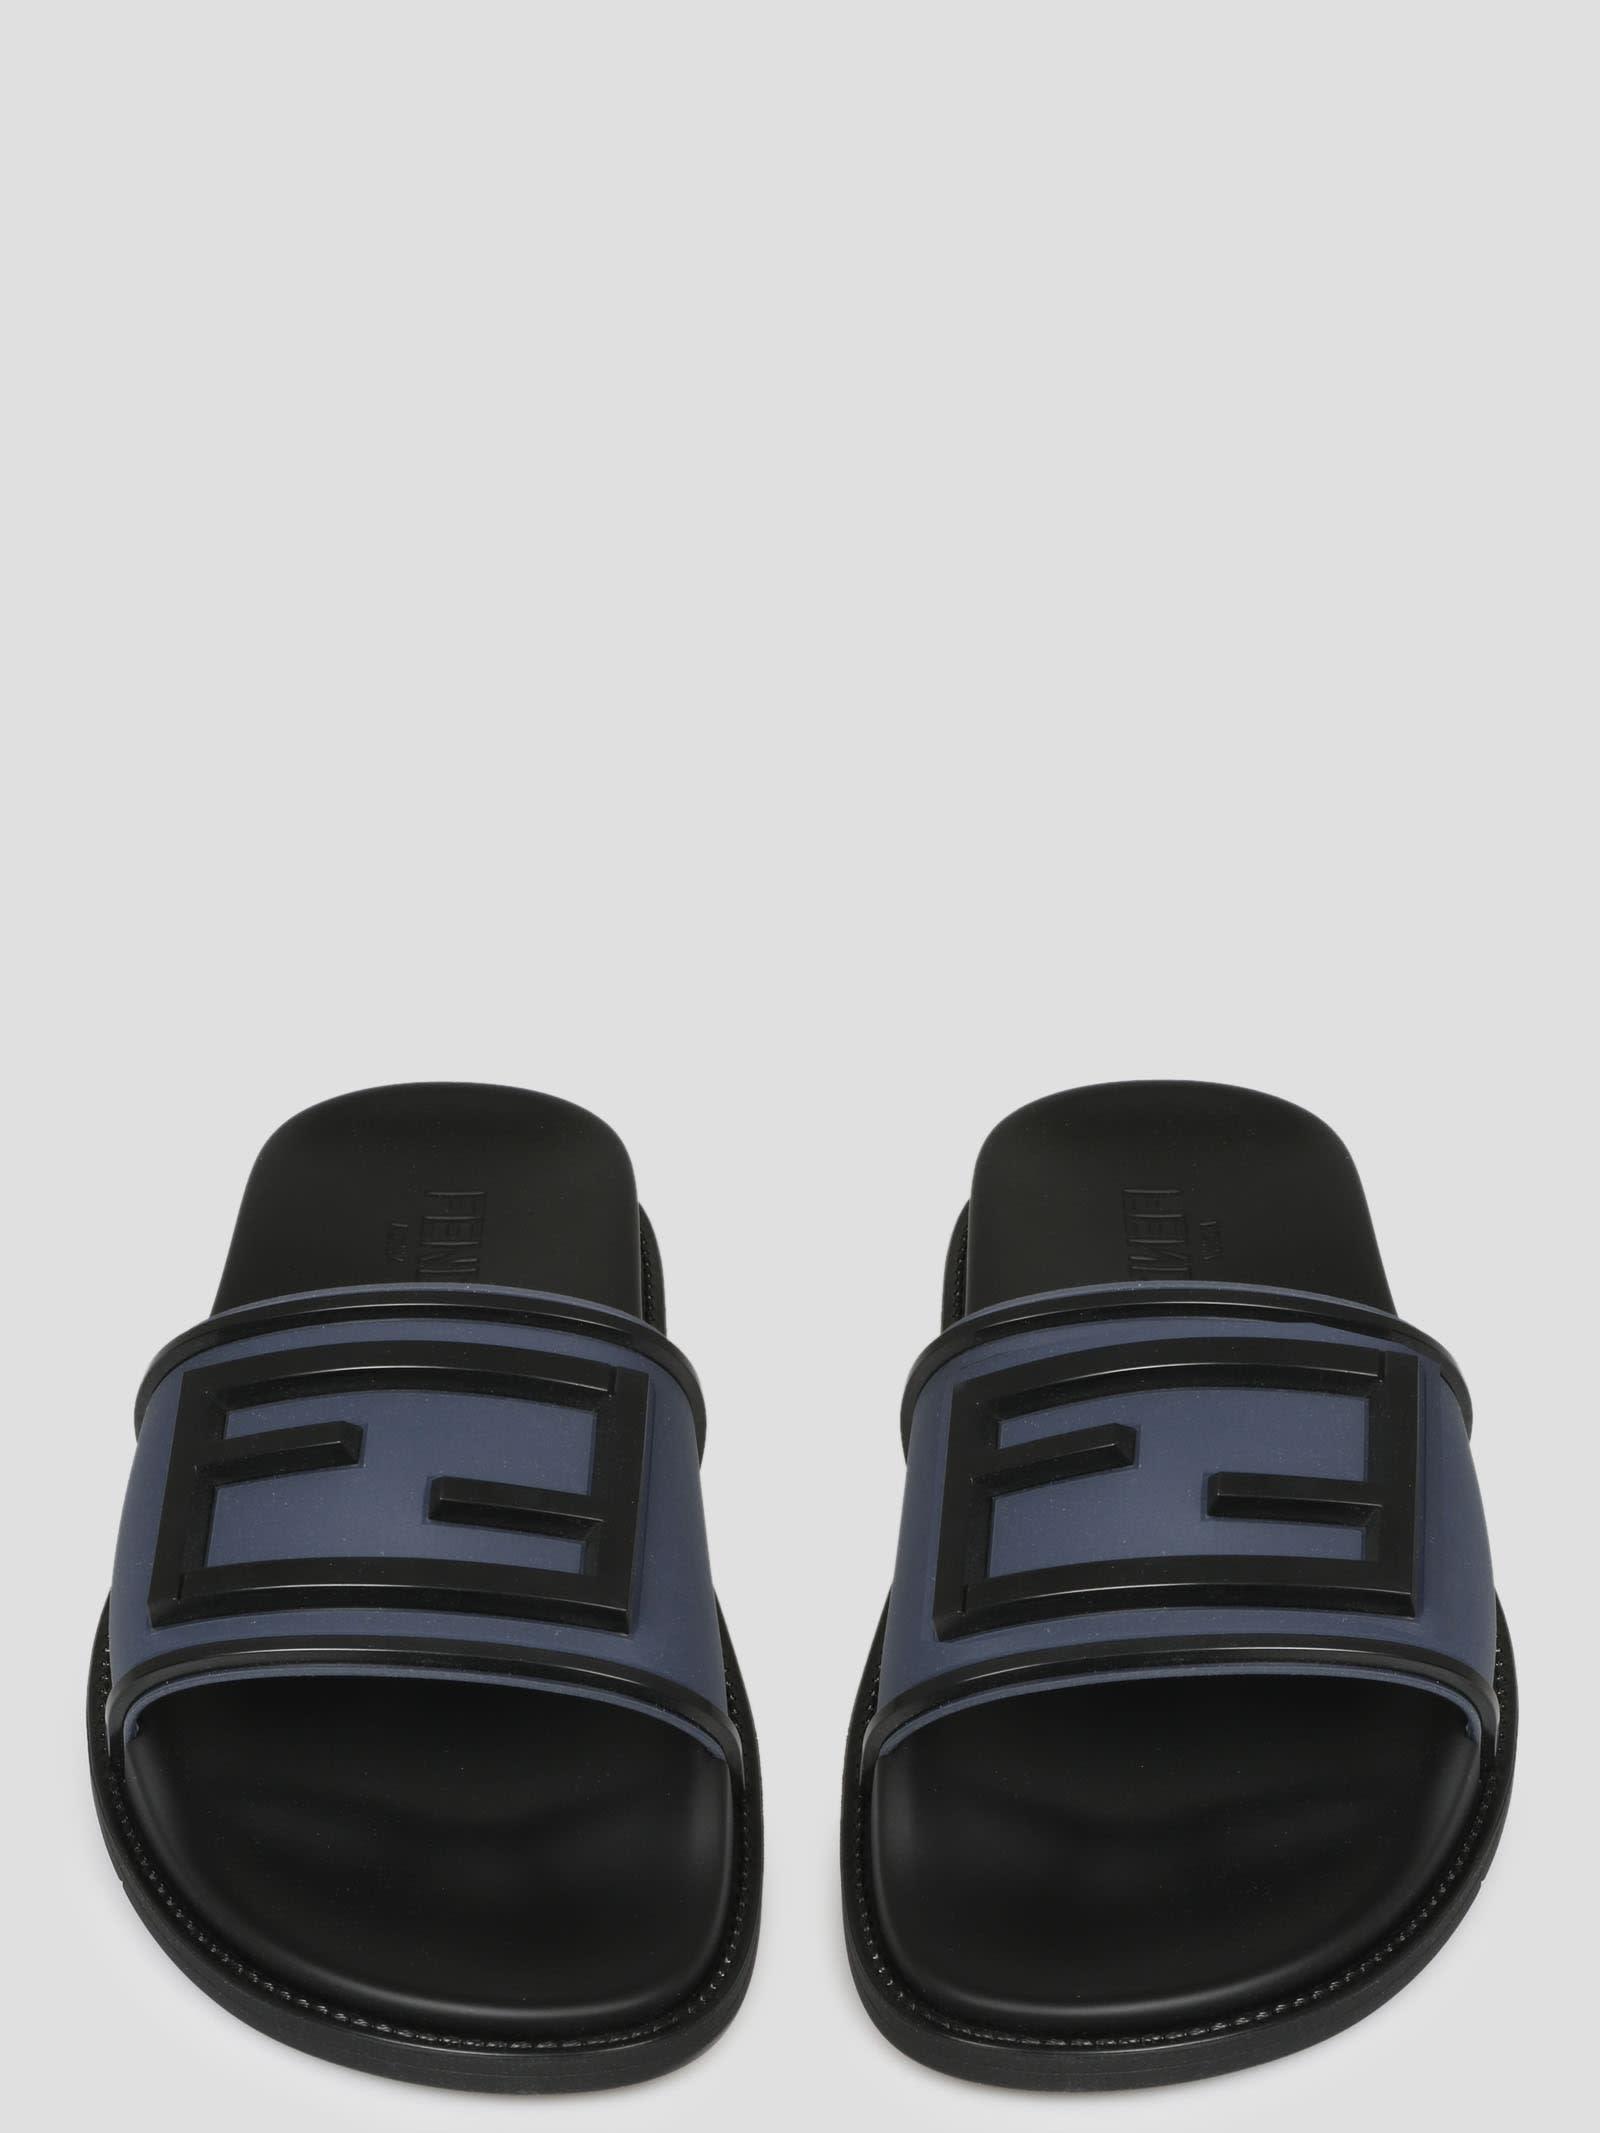 Fendi Slide Baguette Sandals in Black for Men - Save 62% | Lyst